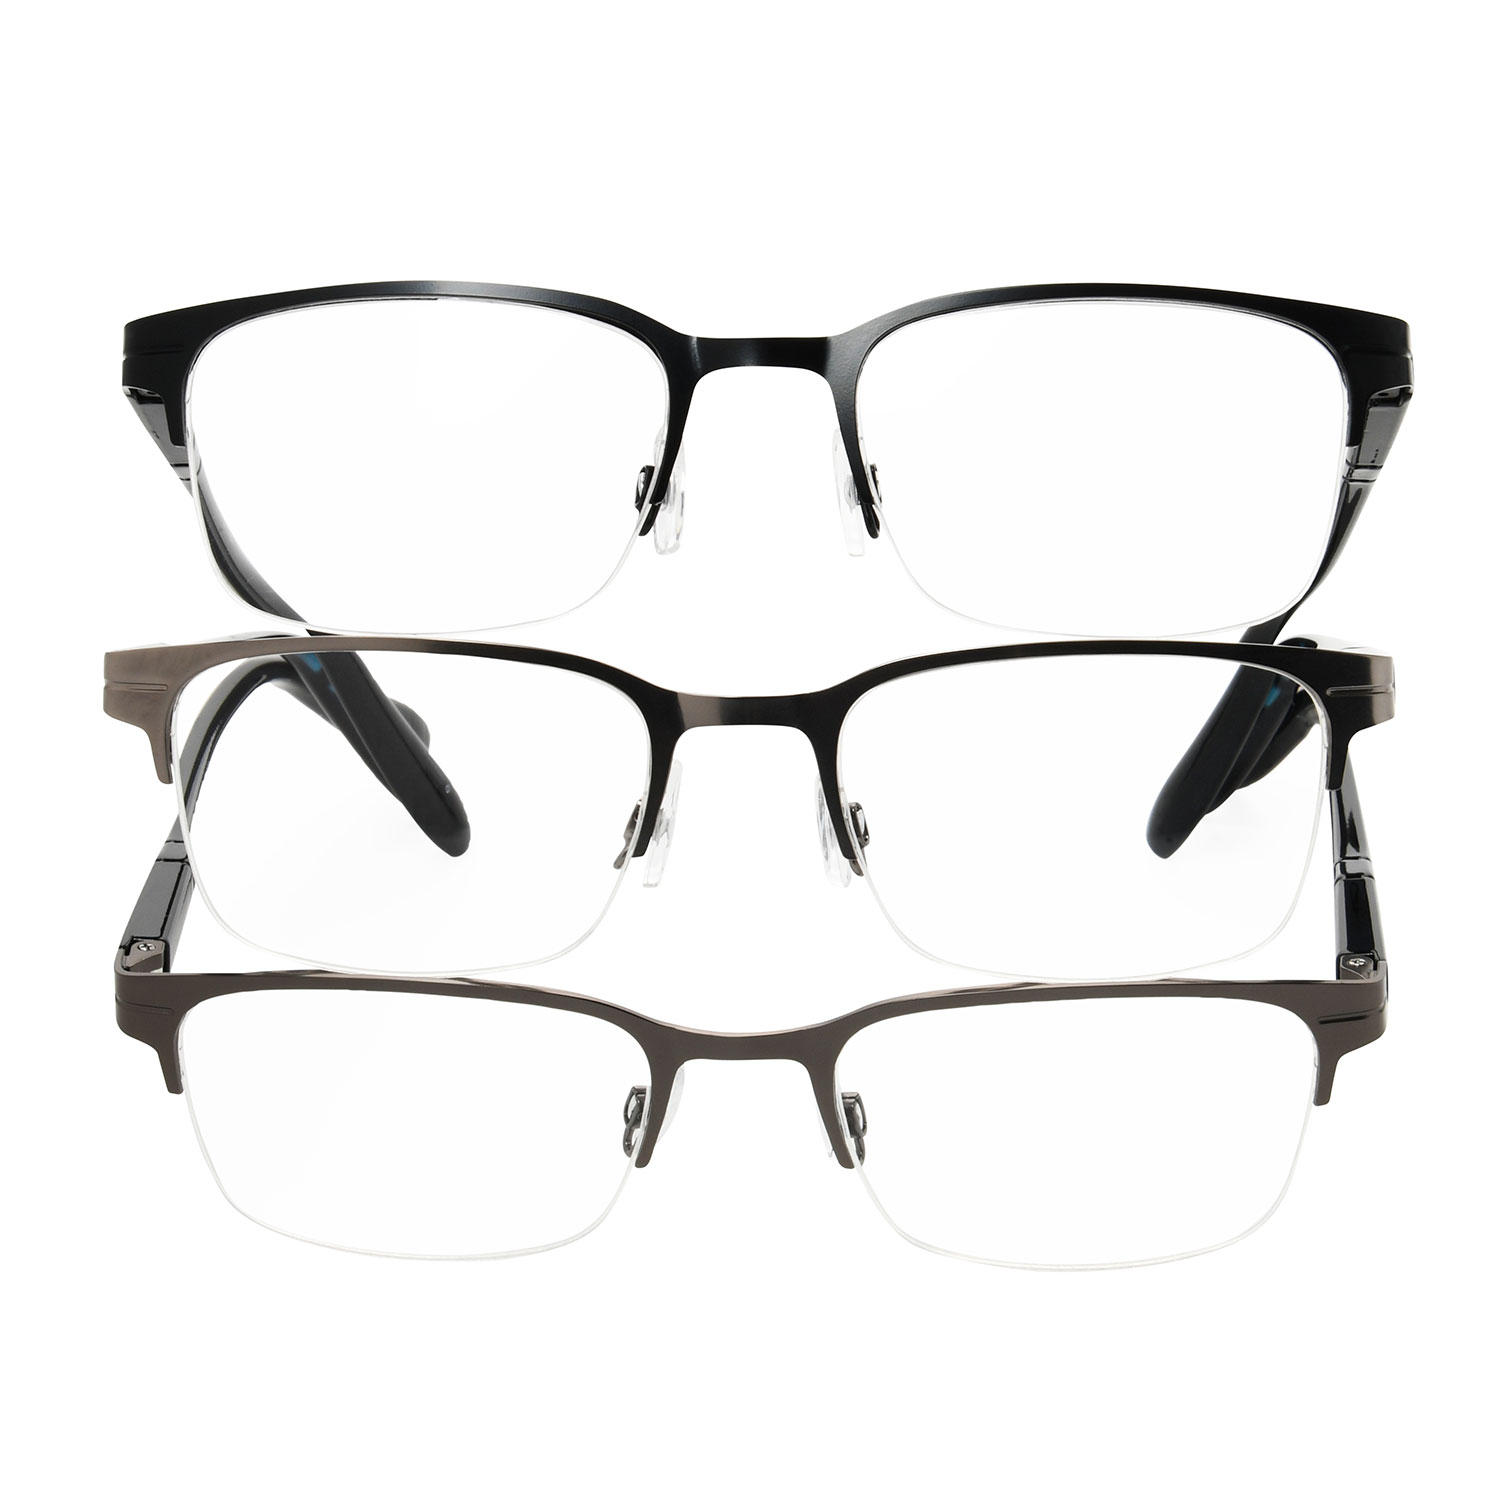 MEMBERS MARK Semi-rimless Metal Reading Glasses (3 pack)